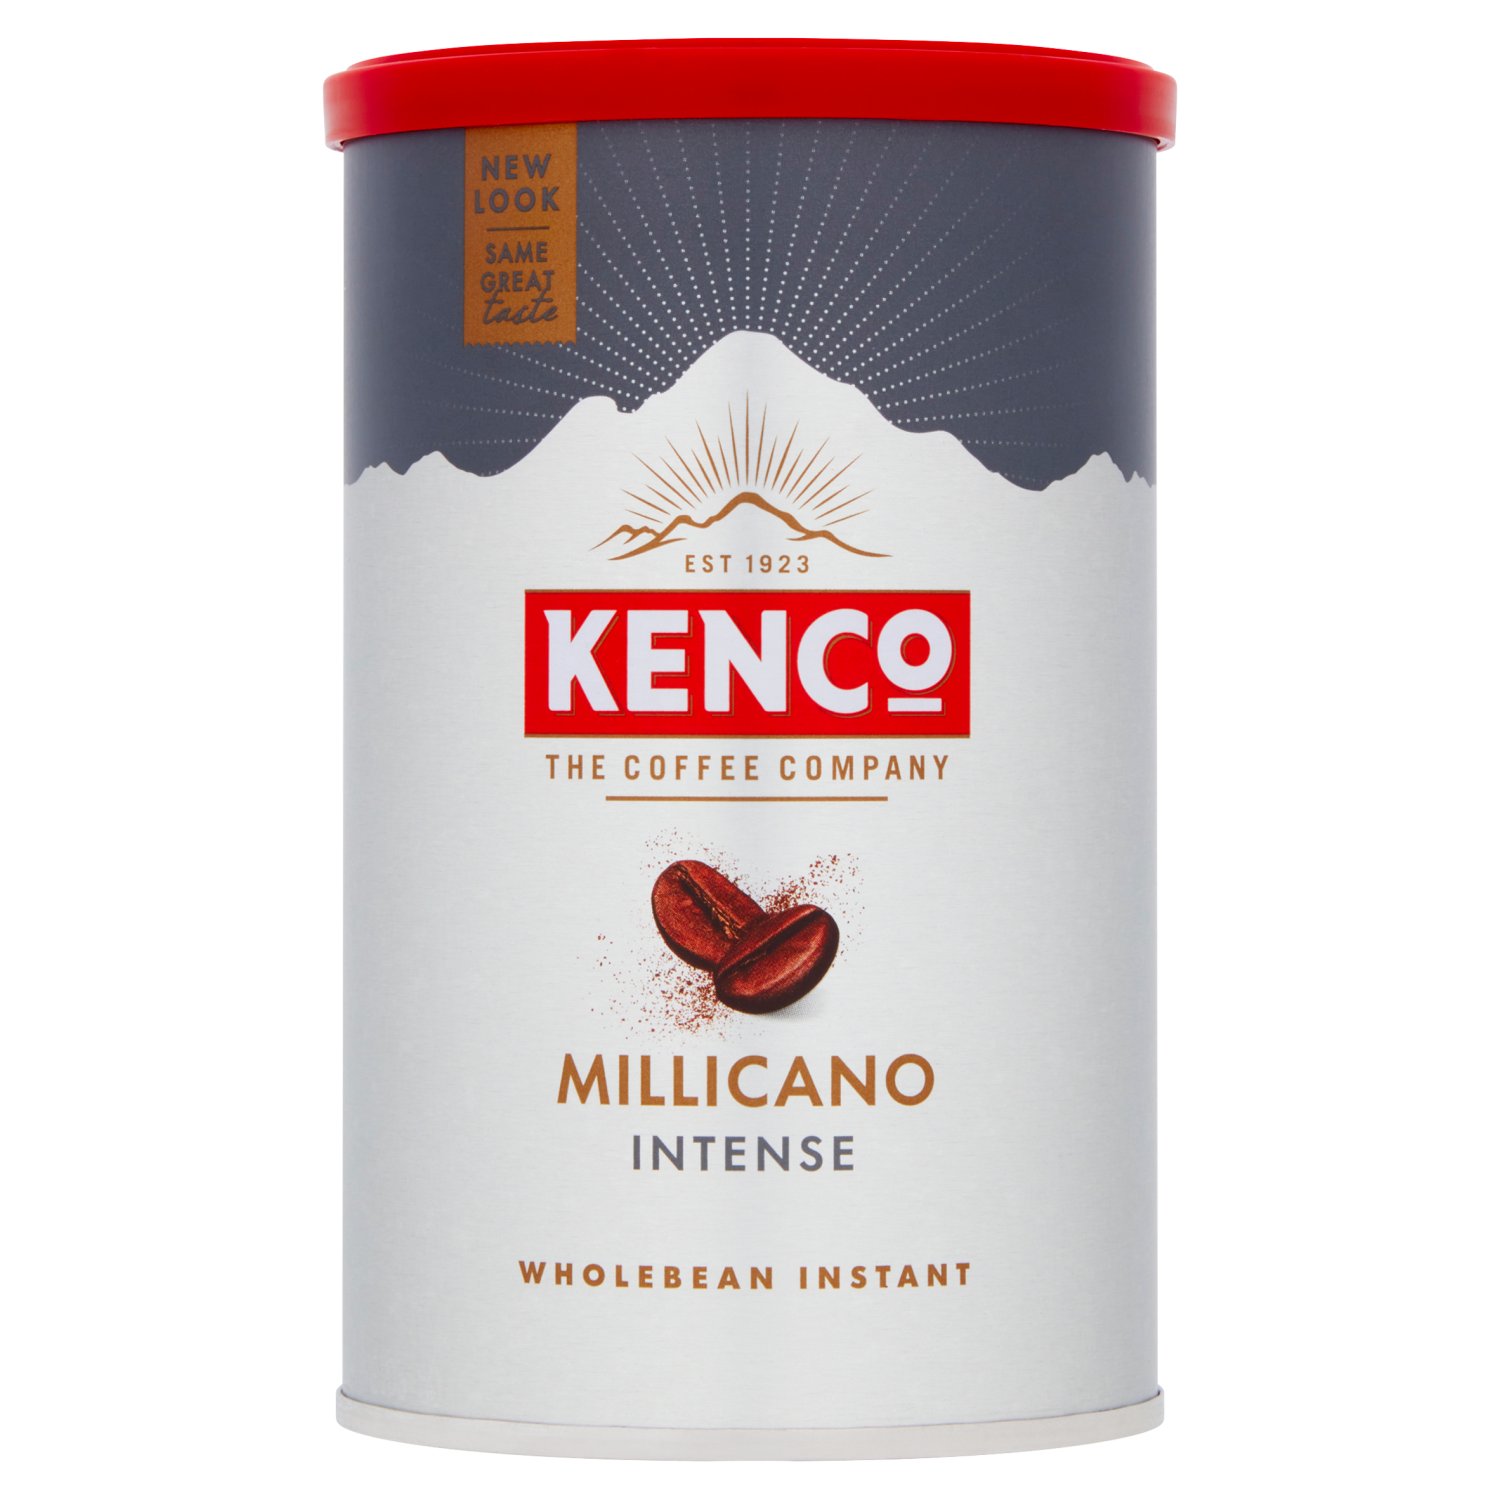 Kenco Millicano Americano Intense Coffee (95 g)